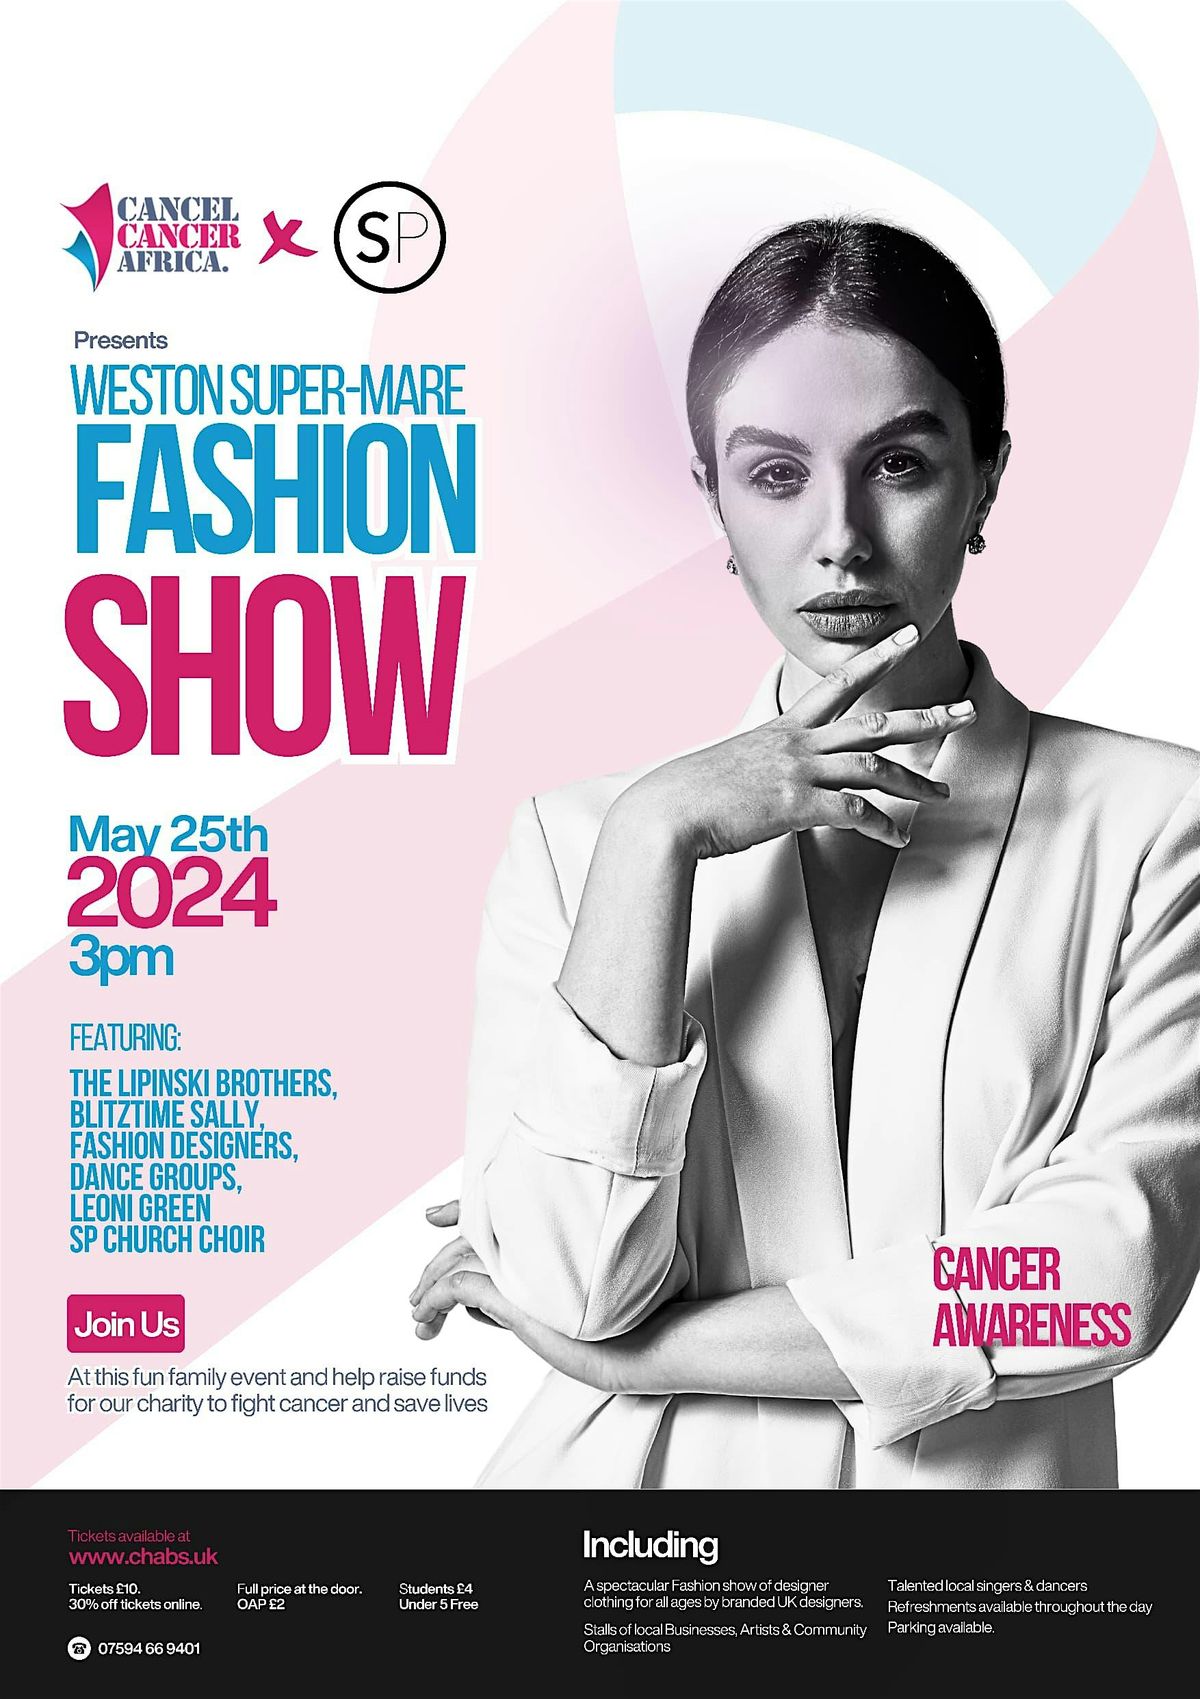 Fashion Show - Weston Super-Mare